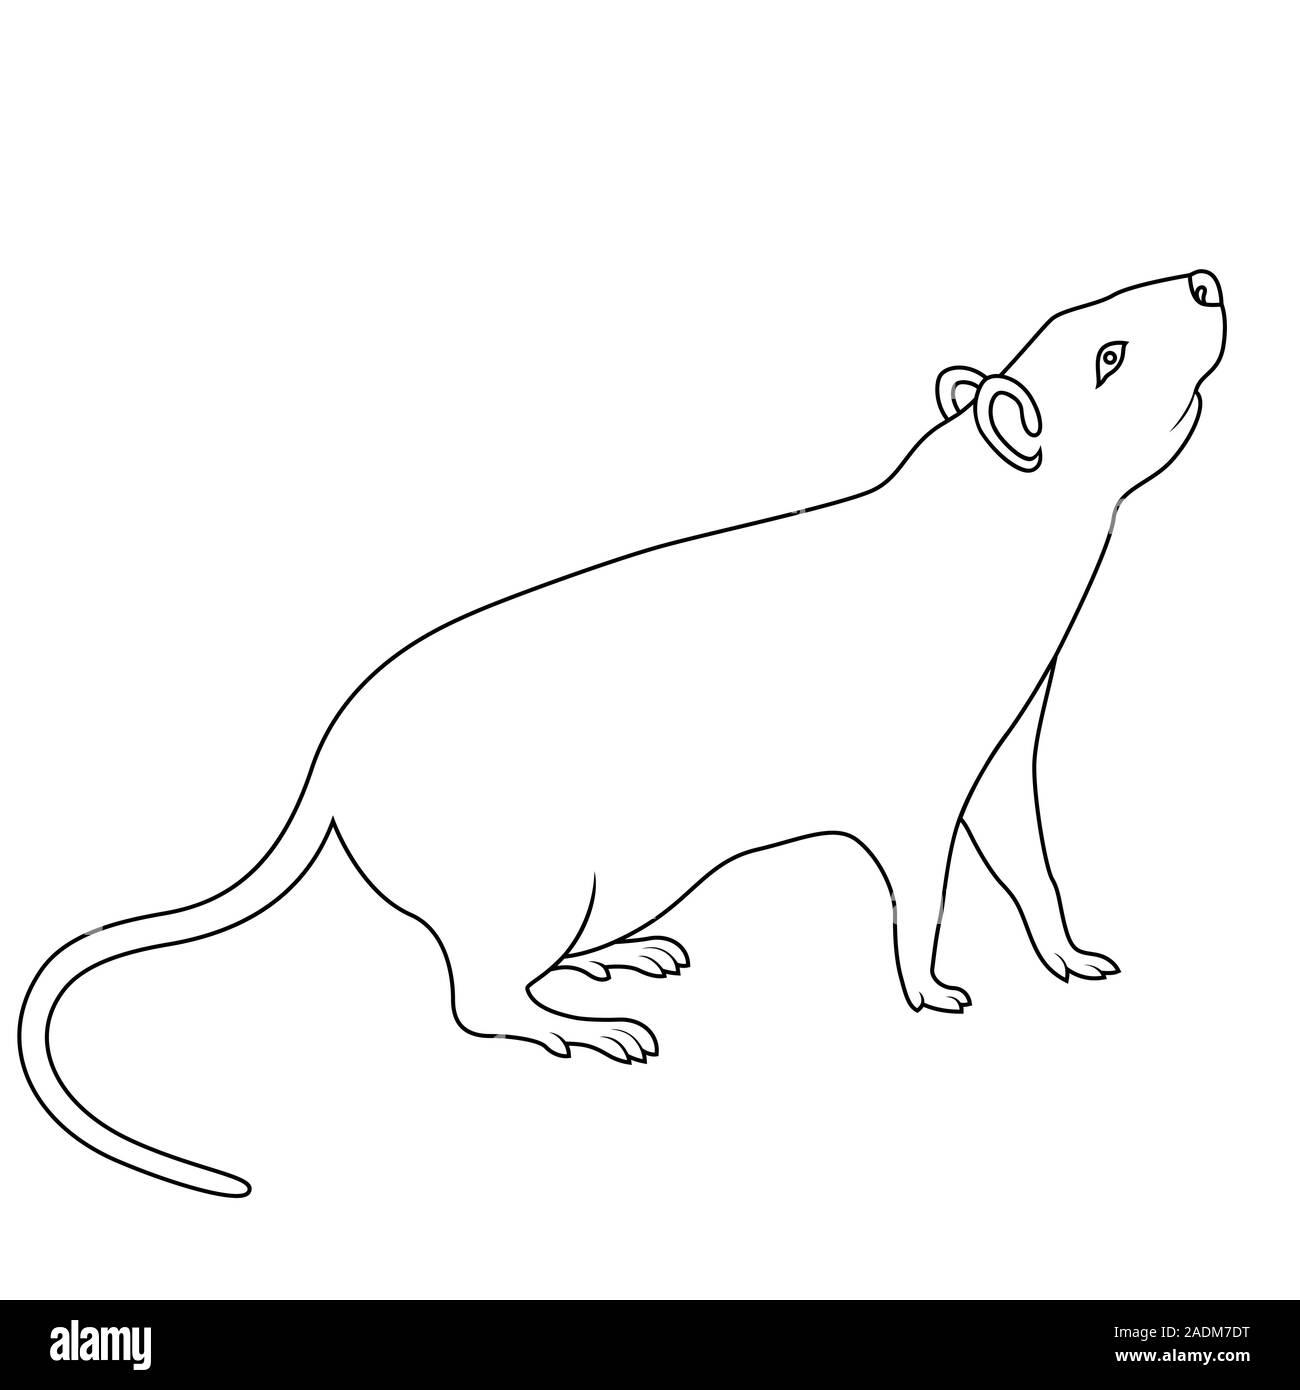 Contour noir de signe zodiacal chinois Rat, symbole de la nouvelle année sur le calendrier oriental, hand drawn illustration isolé sur fond blanc Illustration de Vecteur